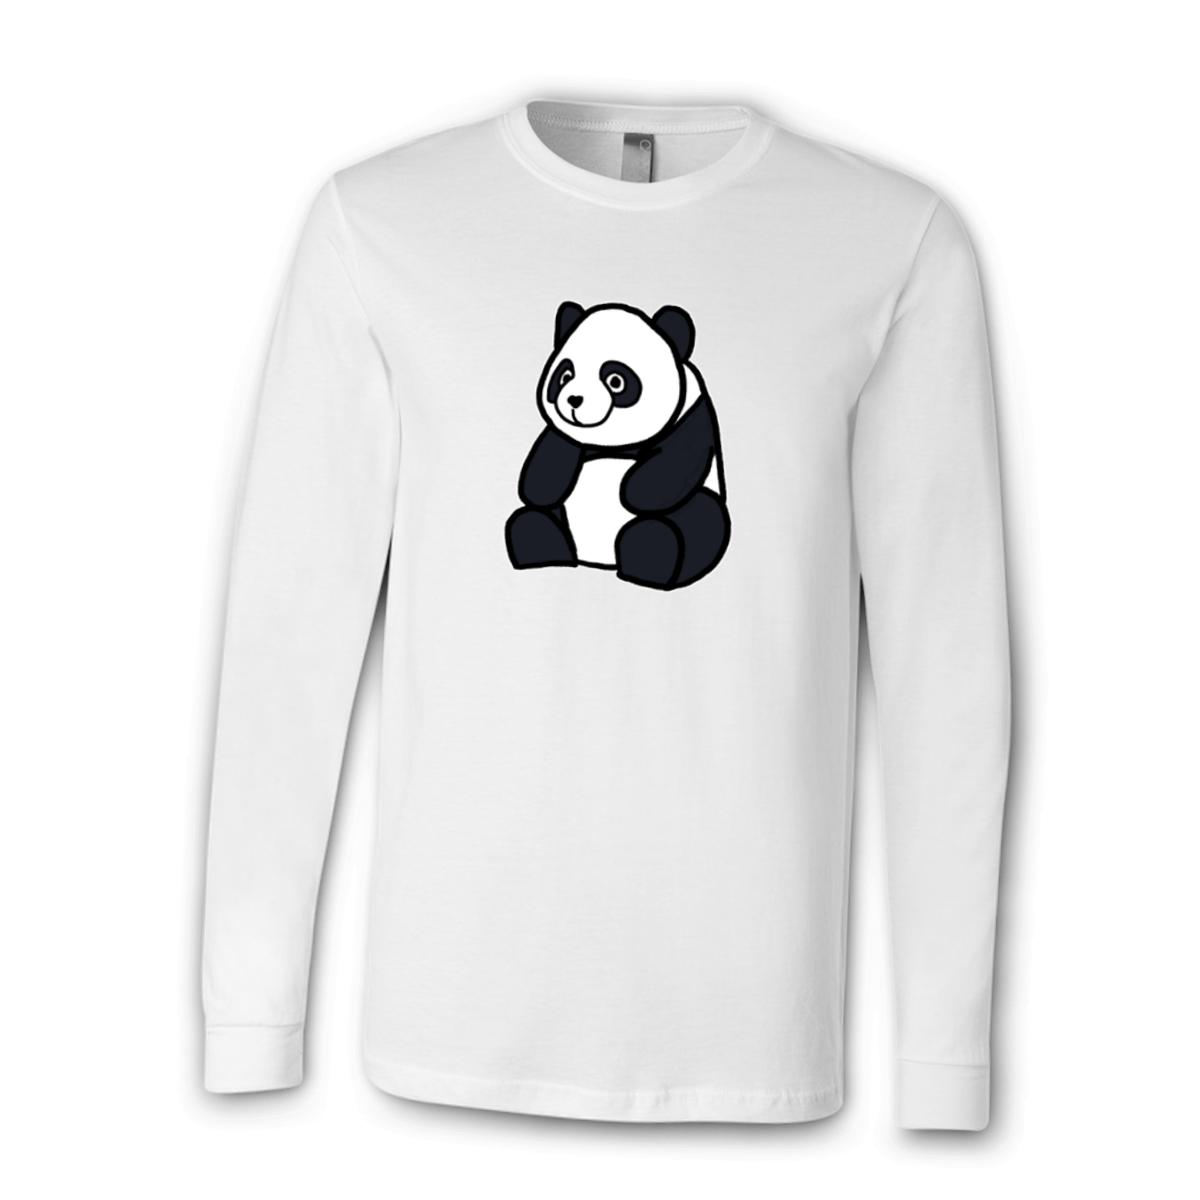 Panda Unisex Long Sleeve Tee Extra Large white